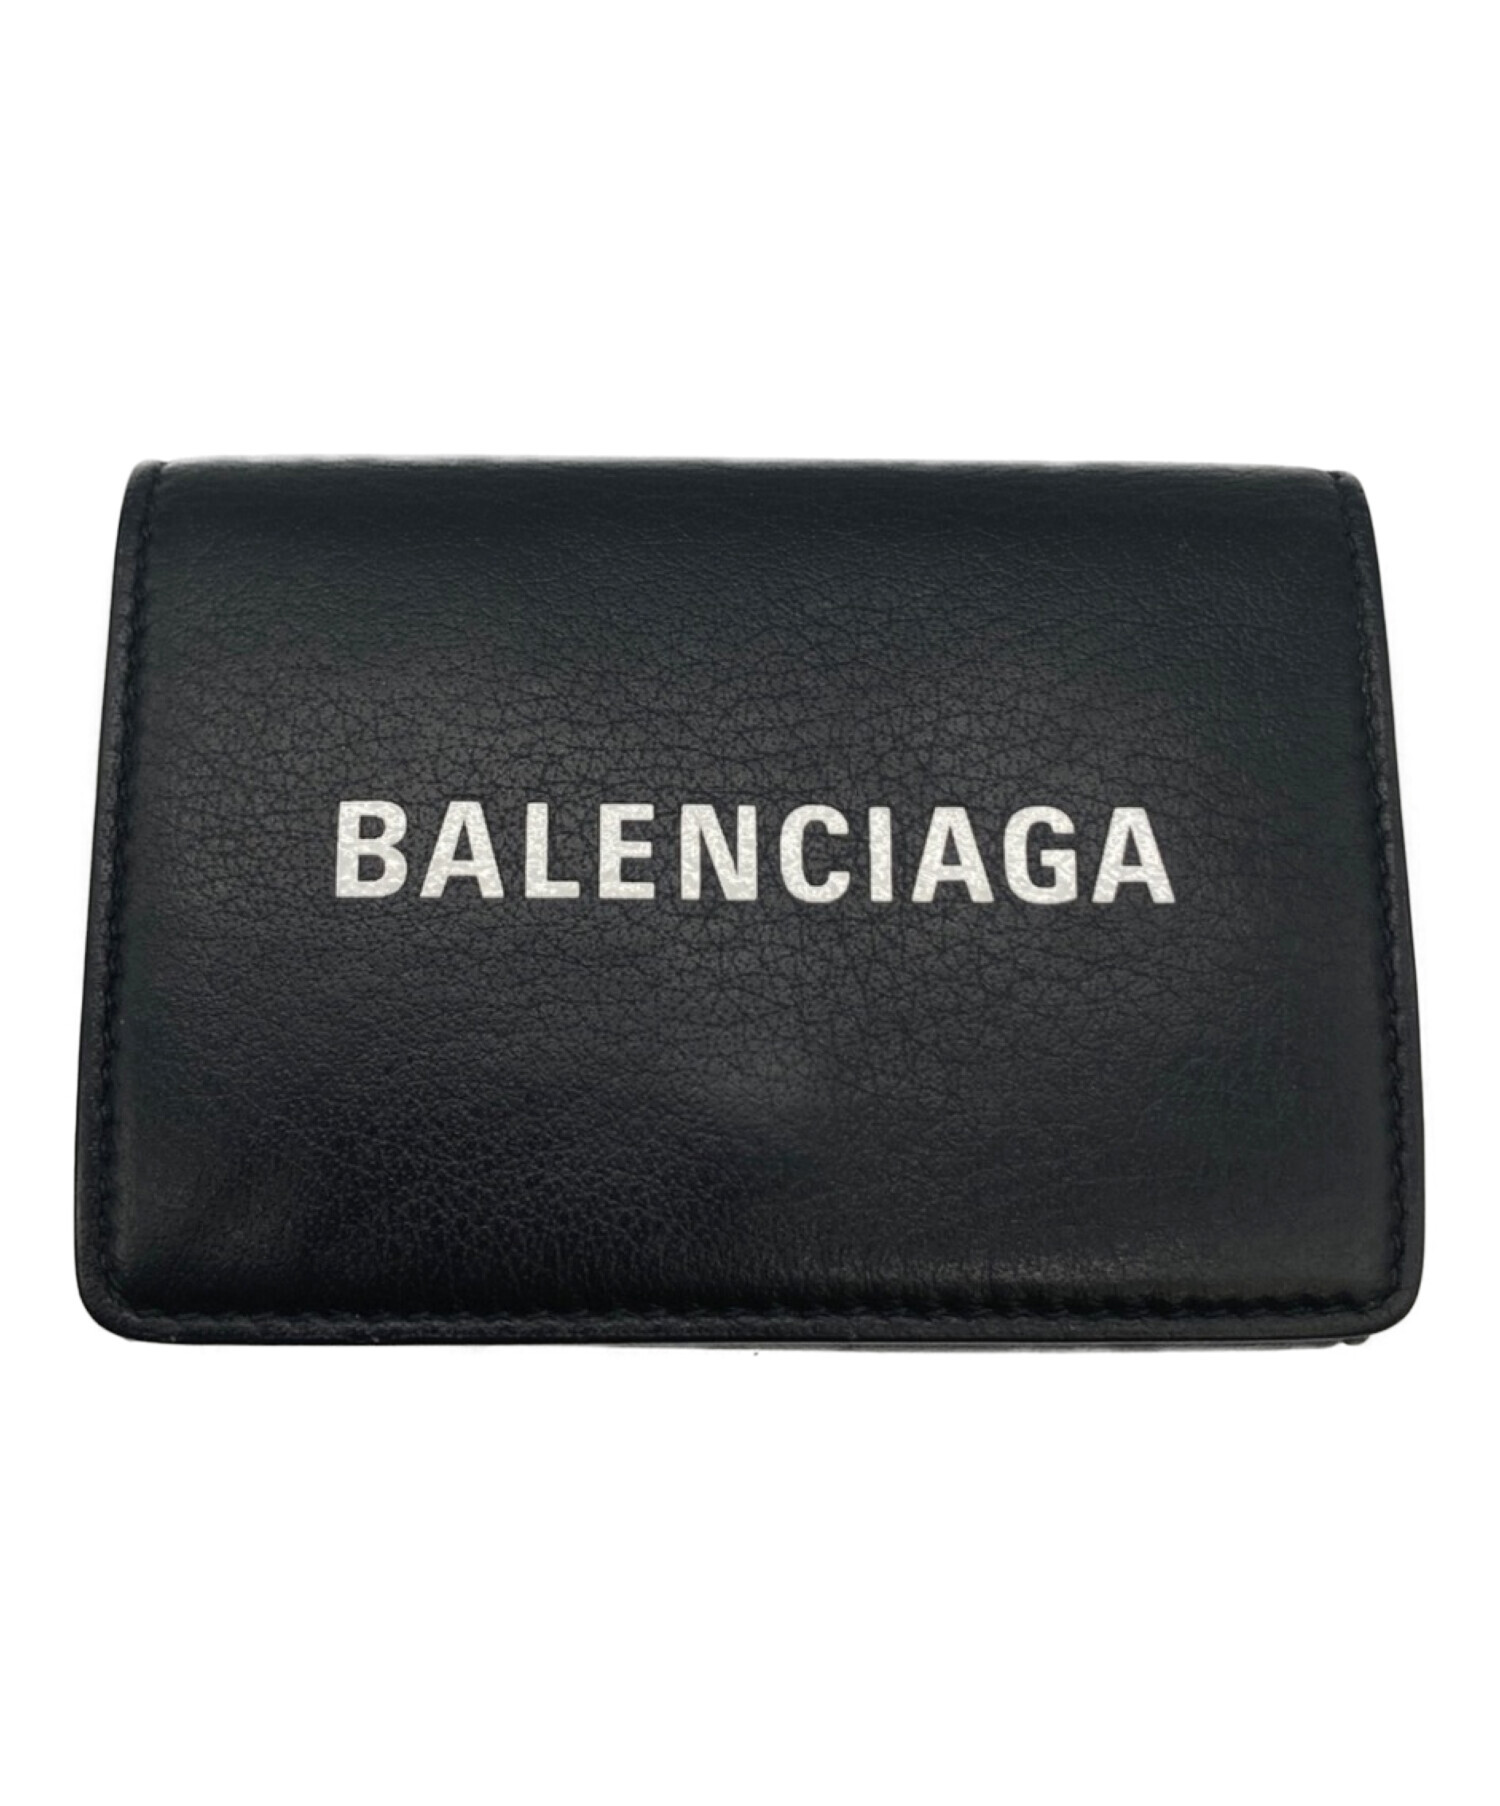 中古・古着通販】BALENCIAGA (バレンシアガ) 3つ折り財布 ブラック